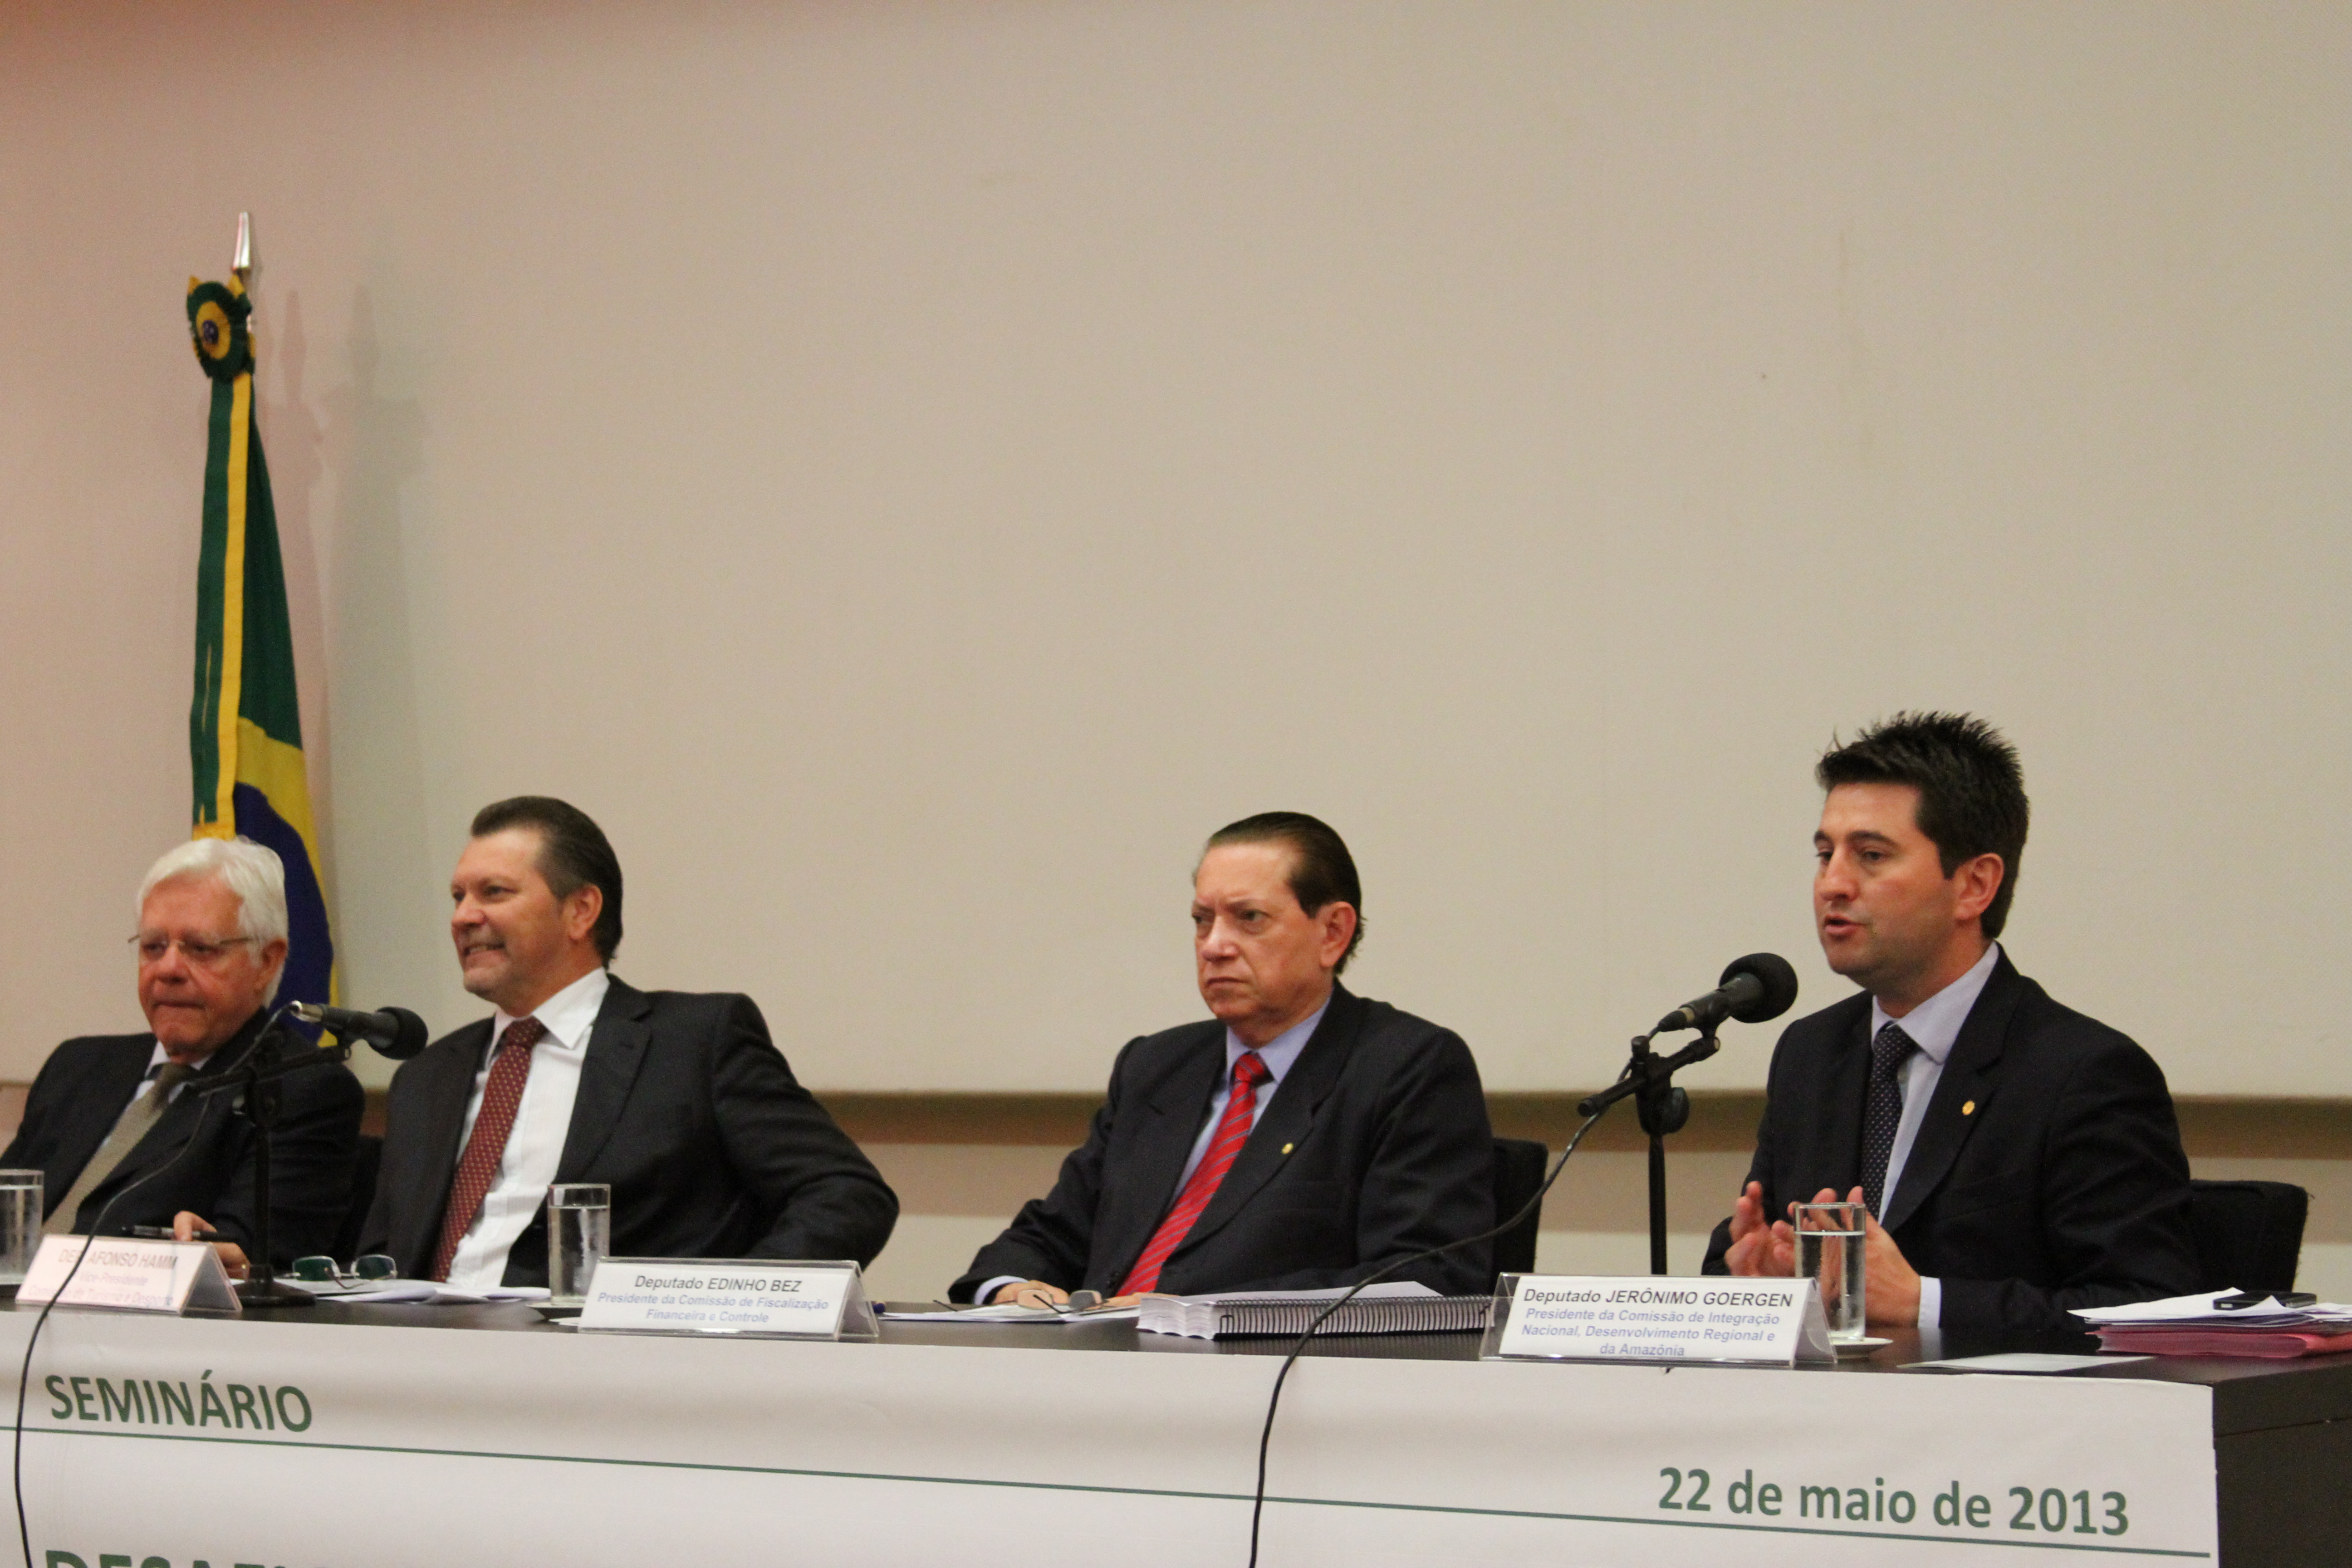 Comissões da Câmara dos Deputados debateram em seminário os desafios da aviação civil brasileira